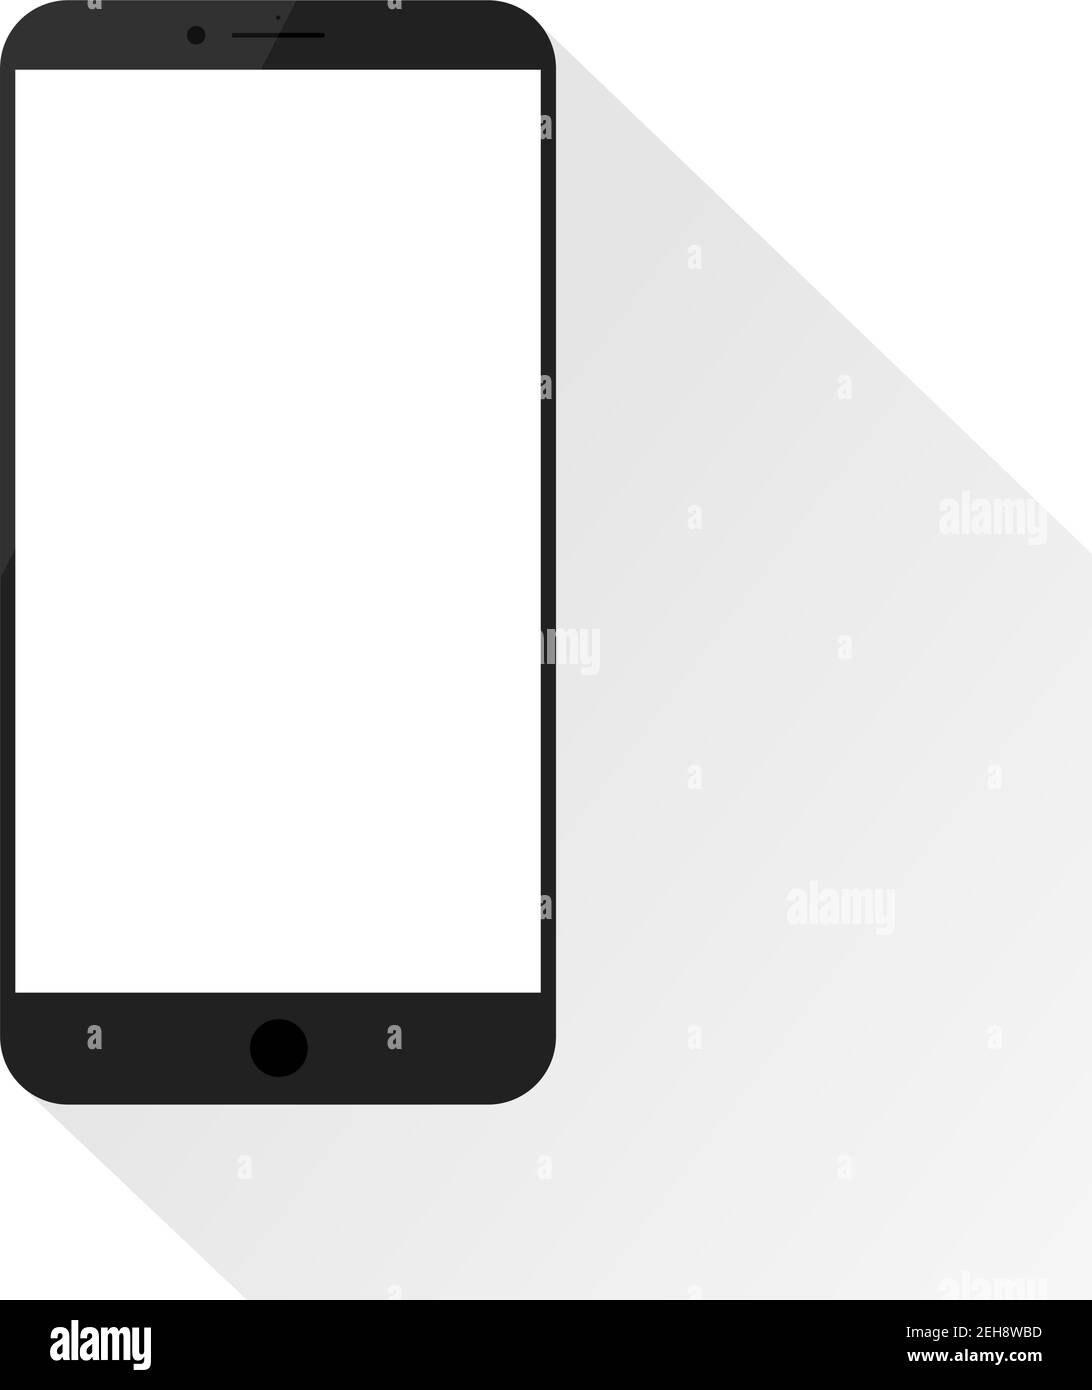 Semplice mockup dello smartphone con schermo vuoto e lampeggio. Ombra chiara e sfondo bianco. Illustrazione Vettoriale